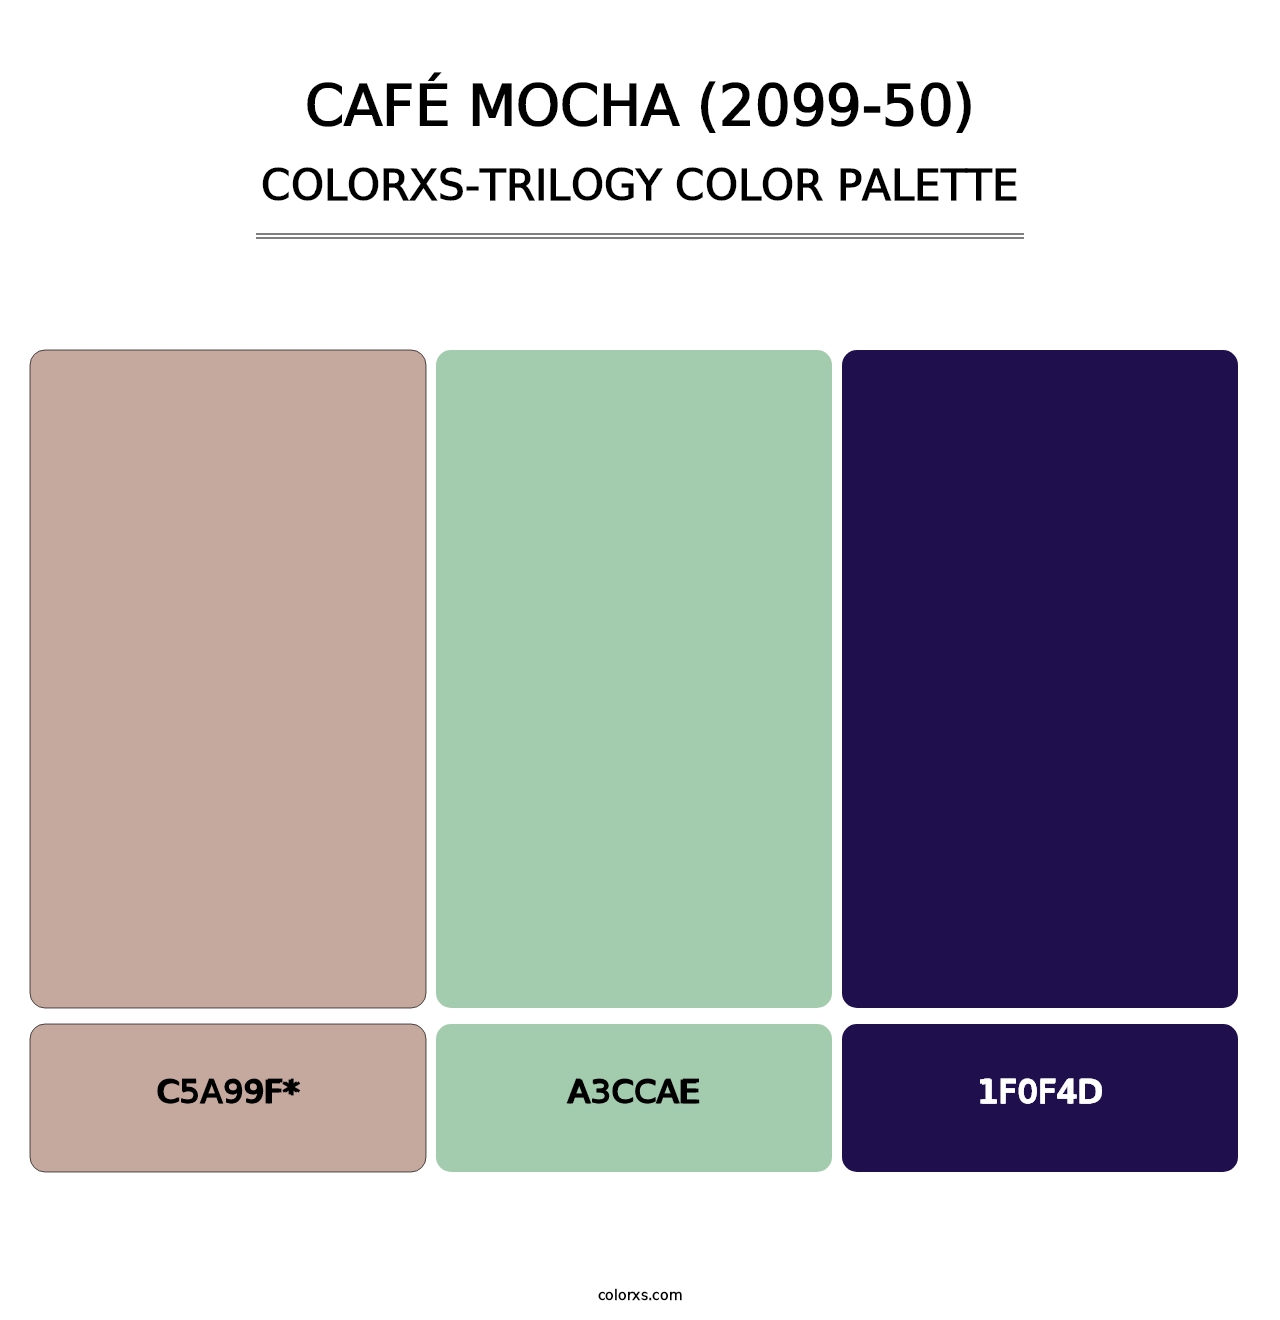 Café Mocha (2099-50) - Colorxs Trilogy Palette